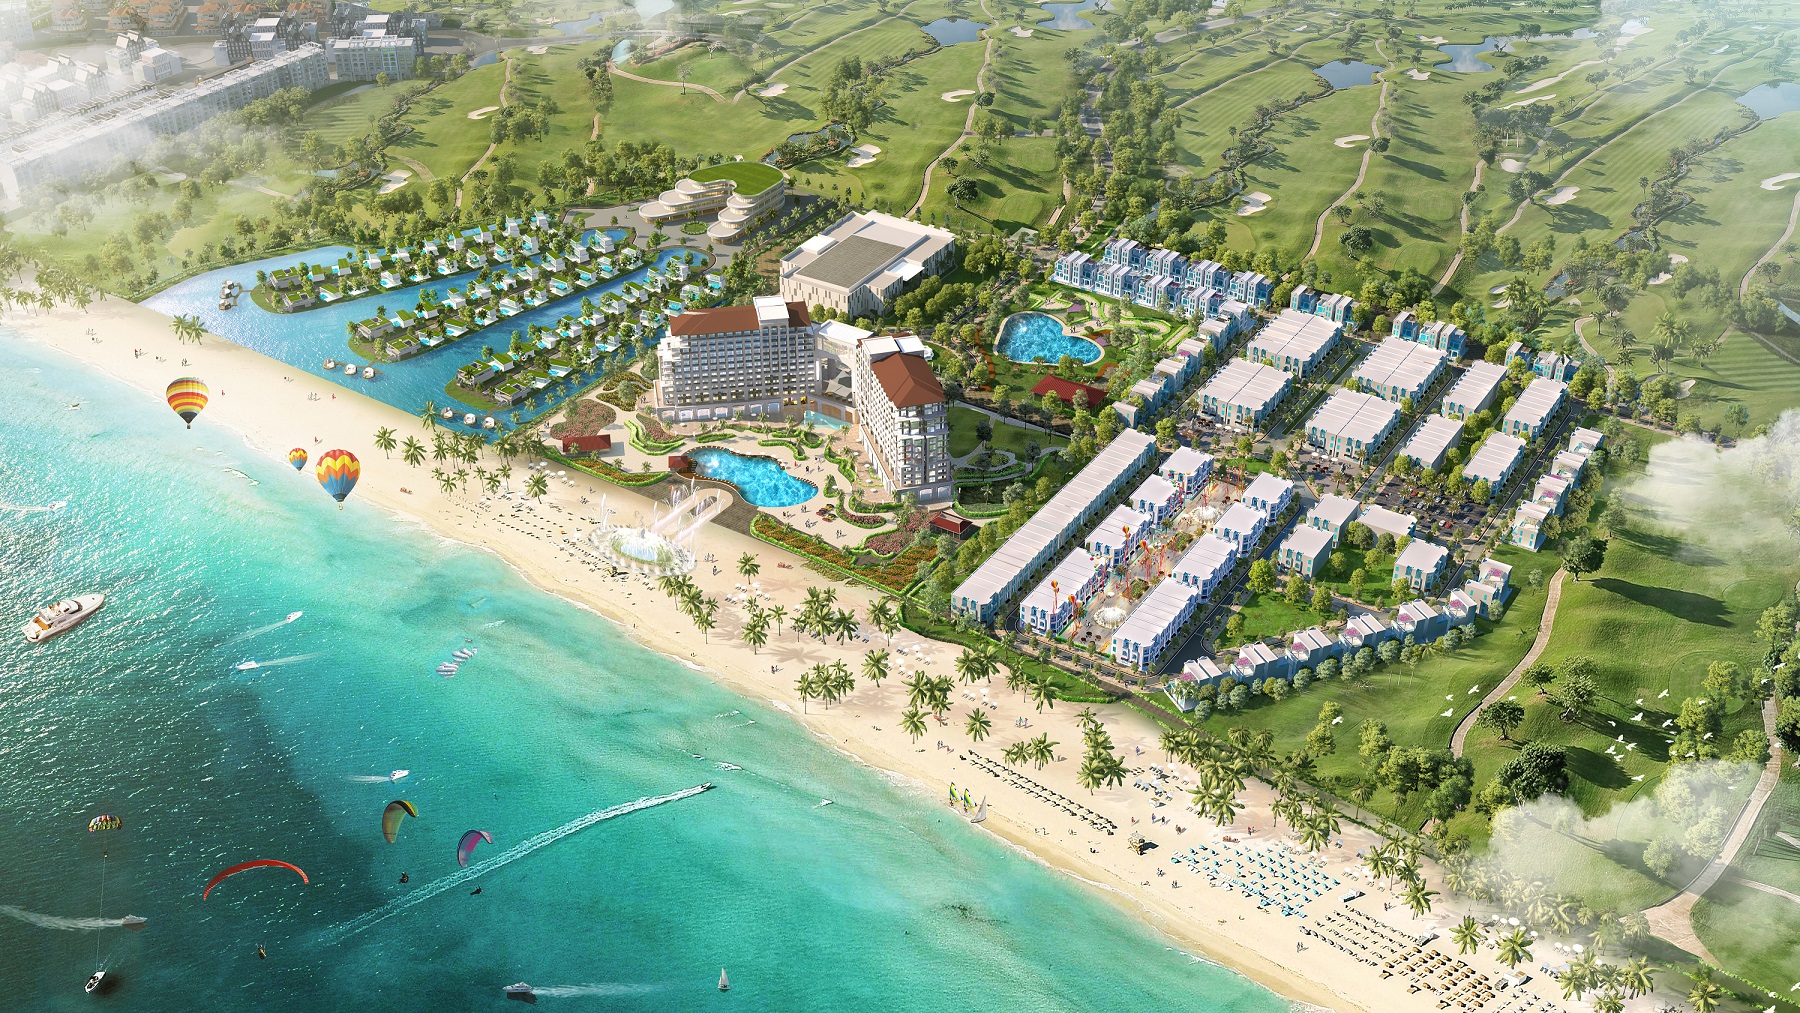 FLC Quảng Bình Beach & Golf Resort